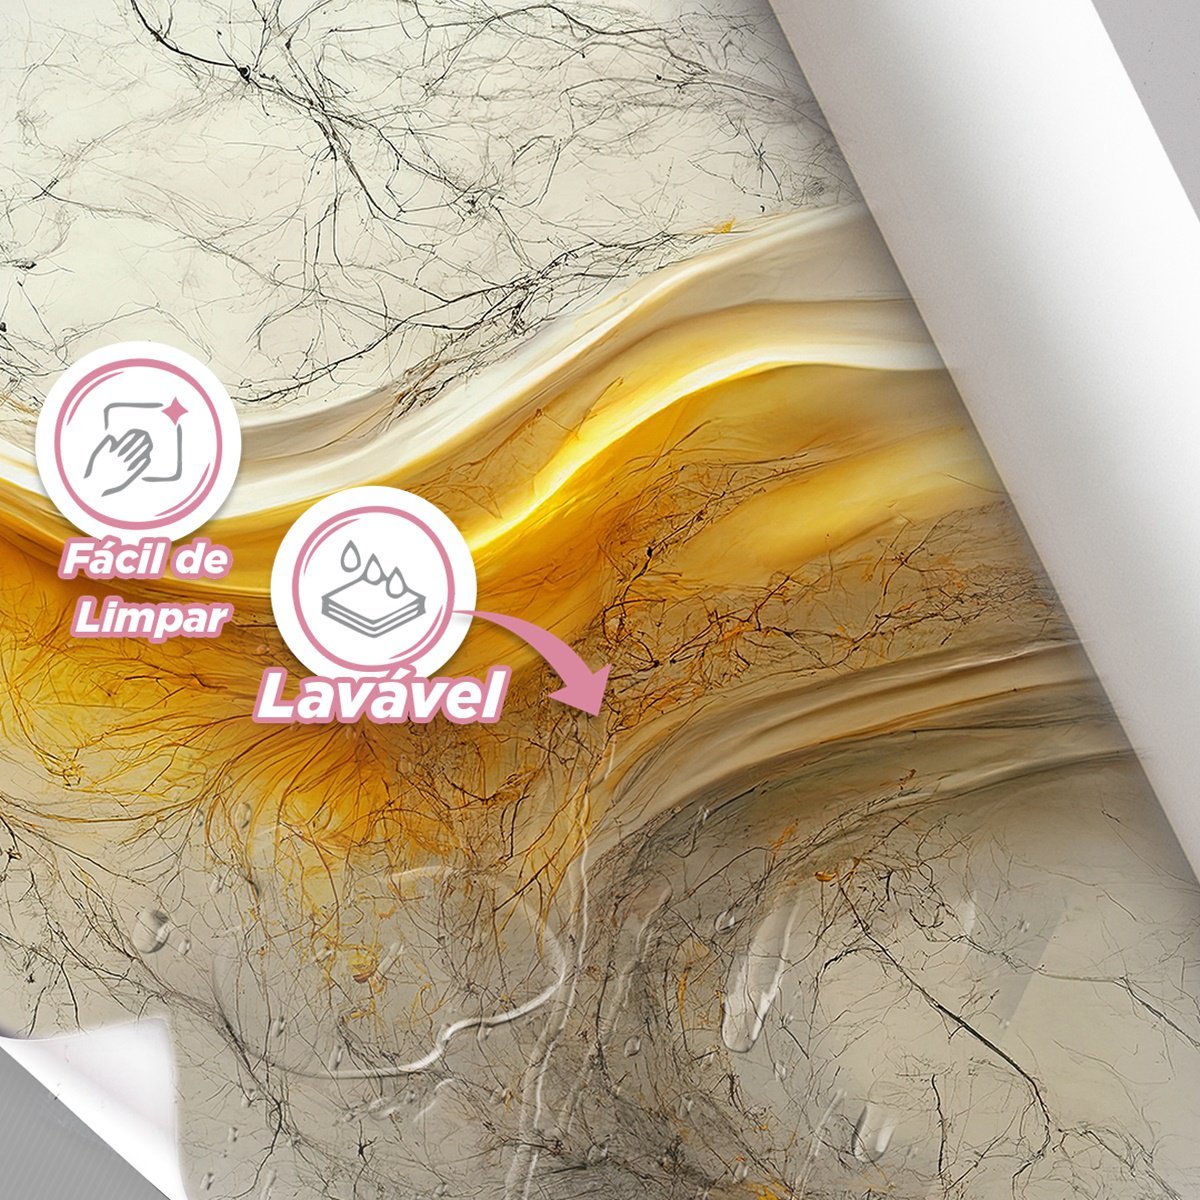 Papel de Parede Painel 3D Mármore Carrara Branco Ouro 2M Auto Colante Lavável Revestimento Brilhoso - 4